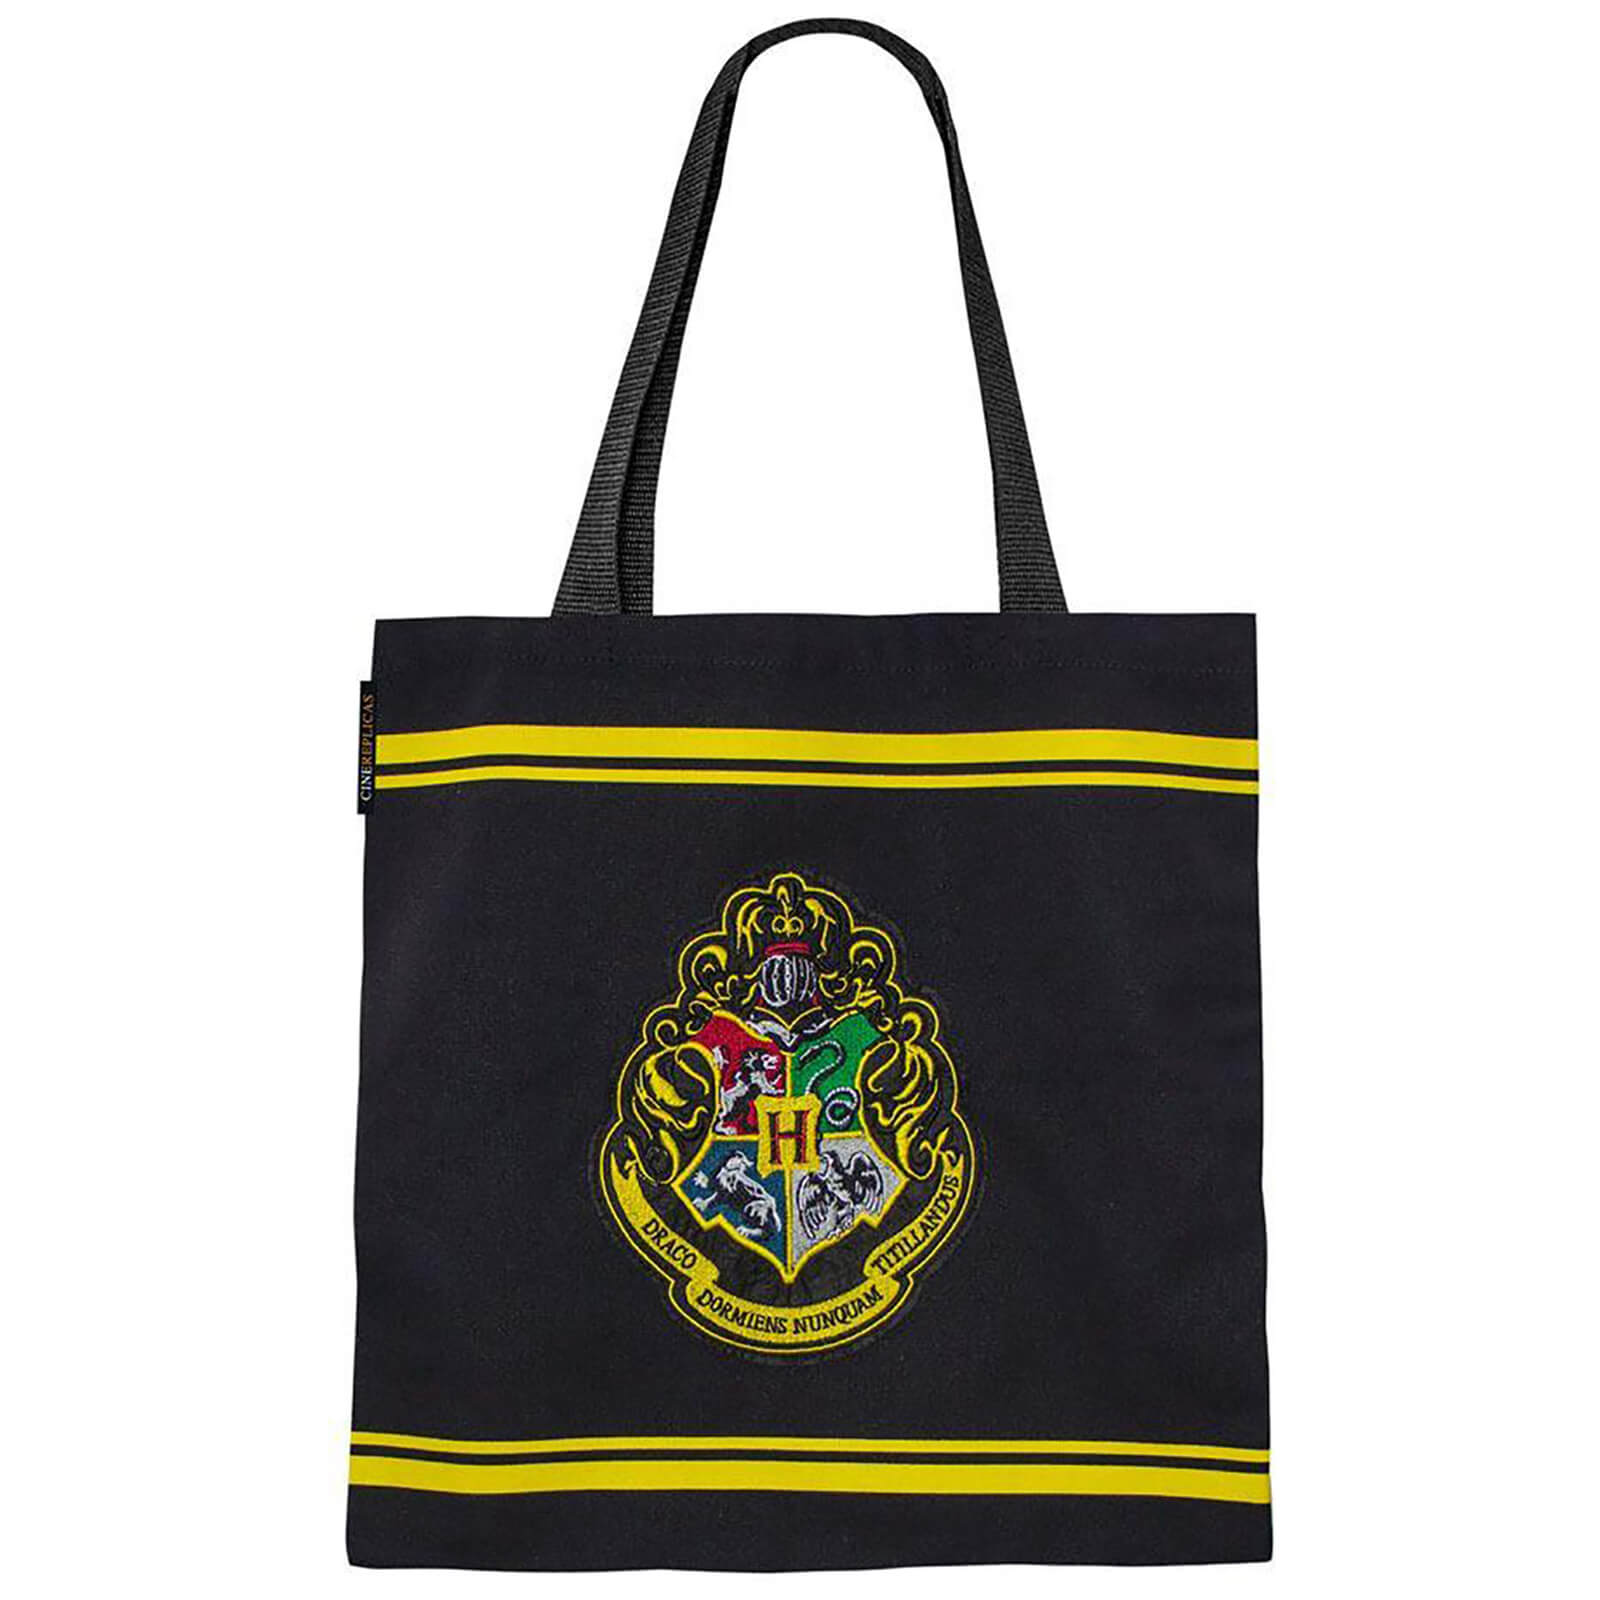 Image of Harry Potter Cinereplica Tote Bag Hogwarts Houses